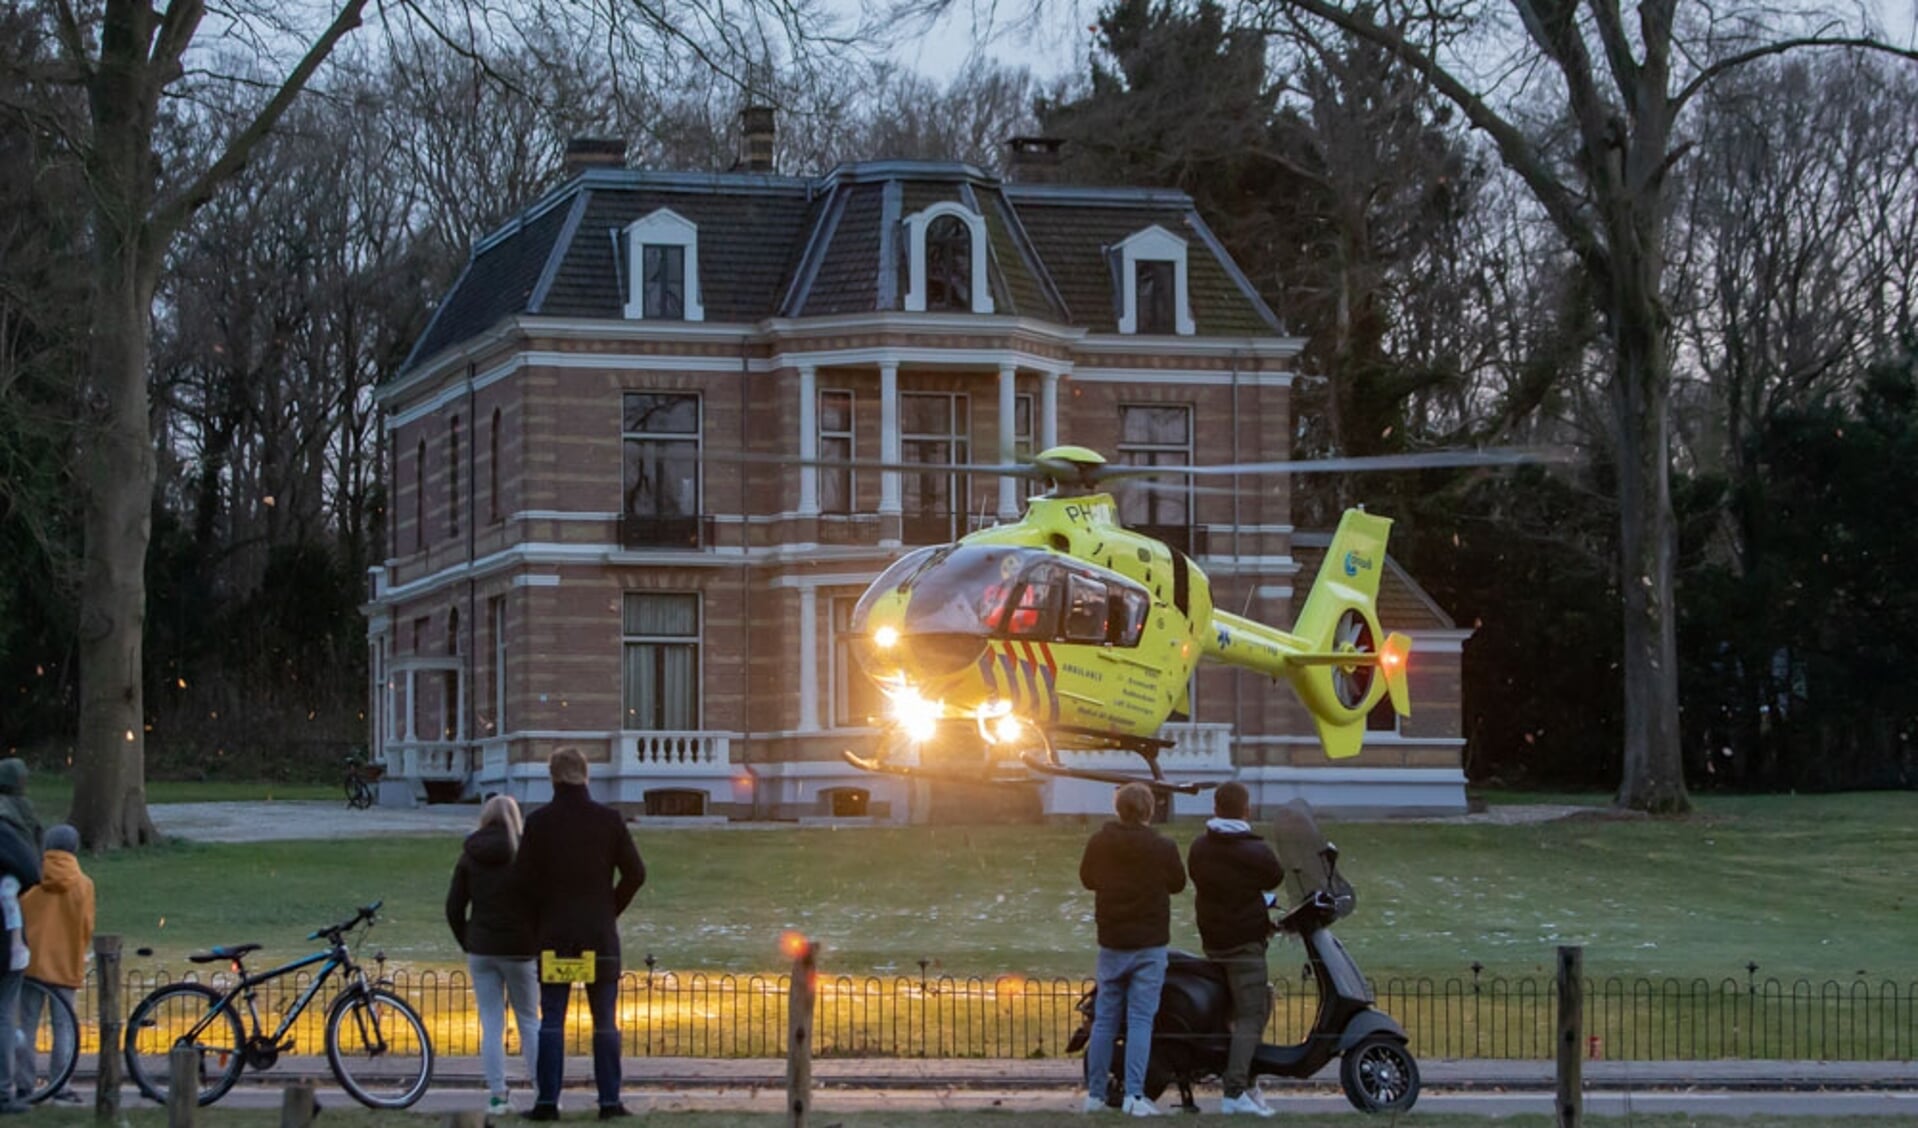 De traumahelikopter landde voor villa Benthuijs aan de Eemnesserweg.